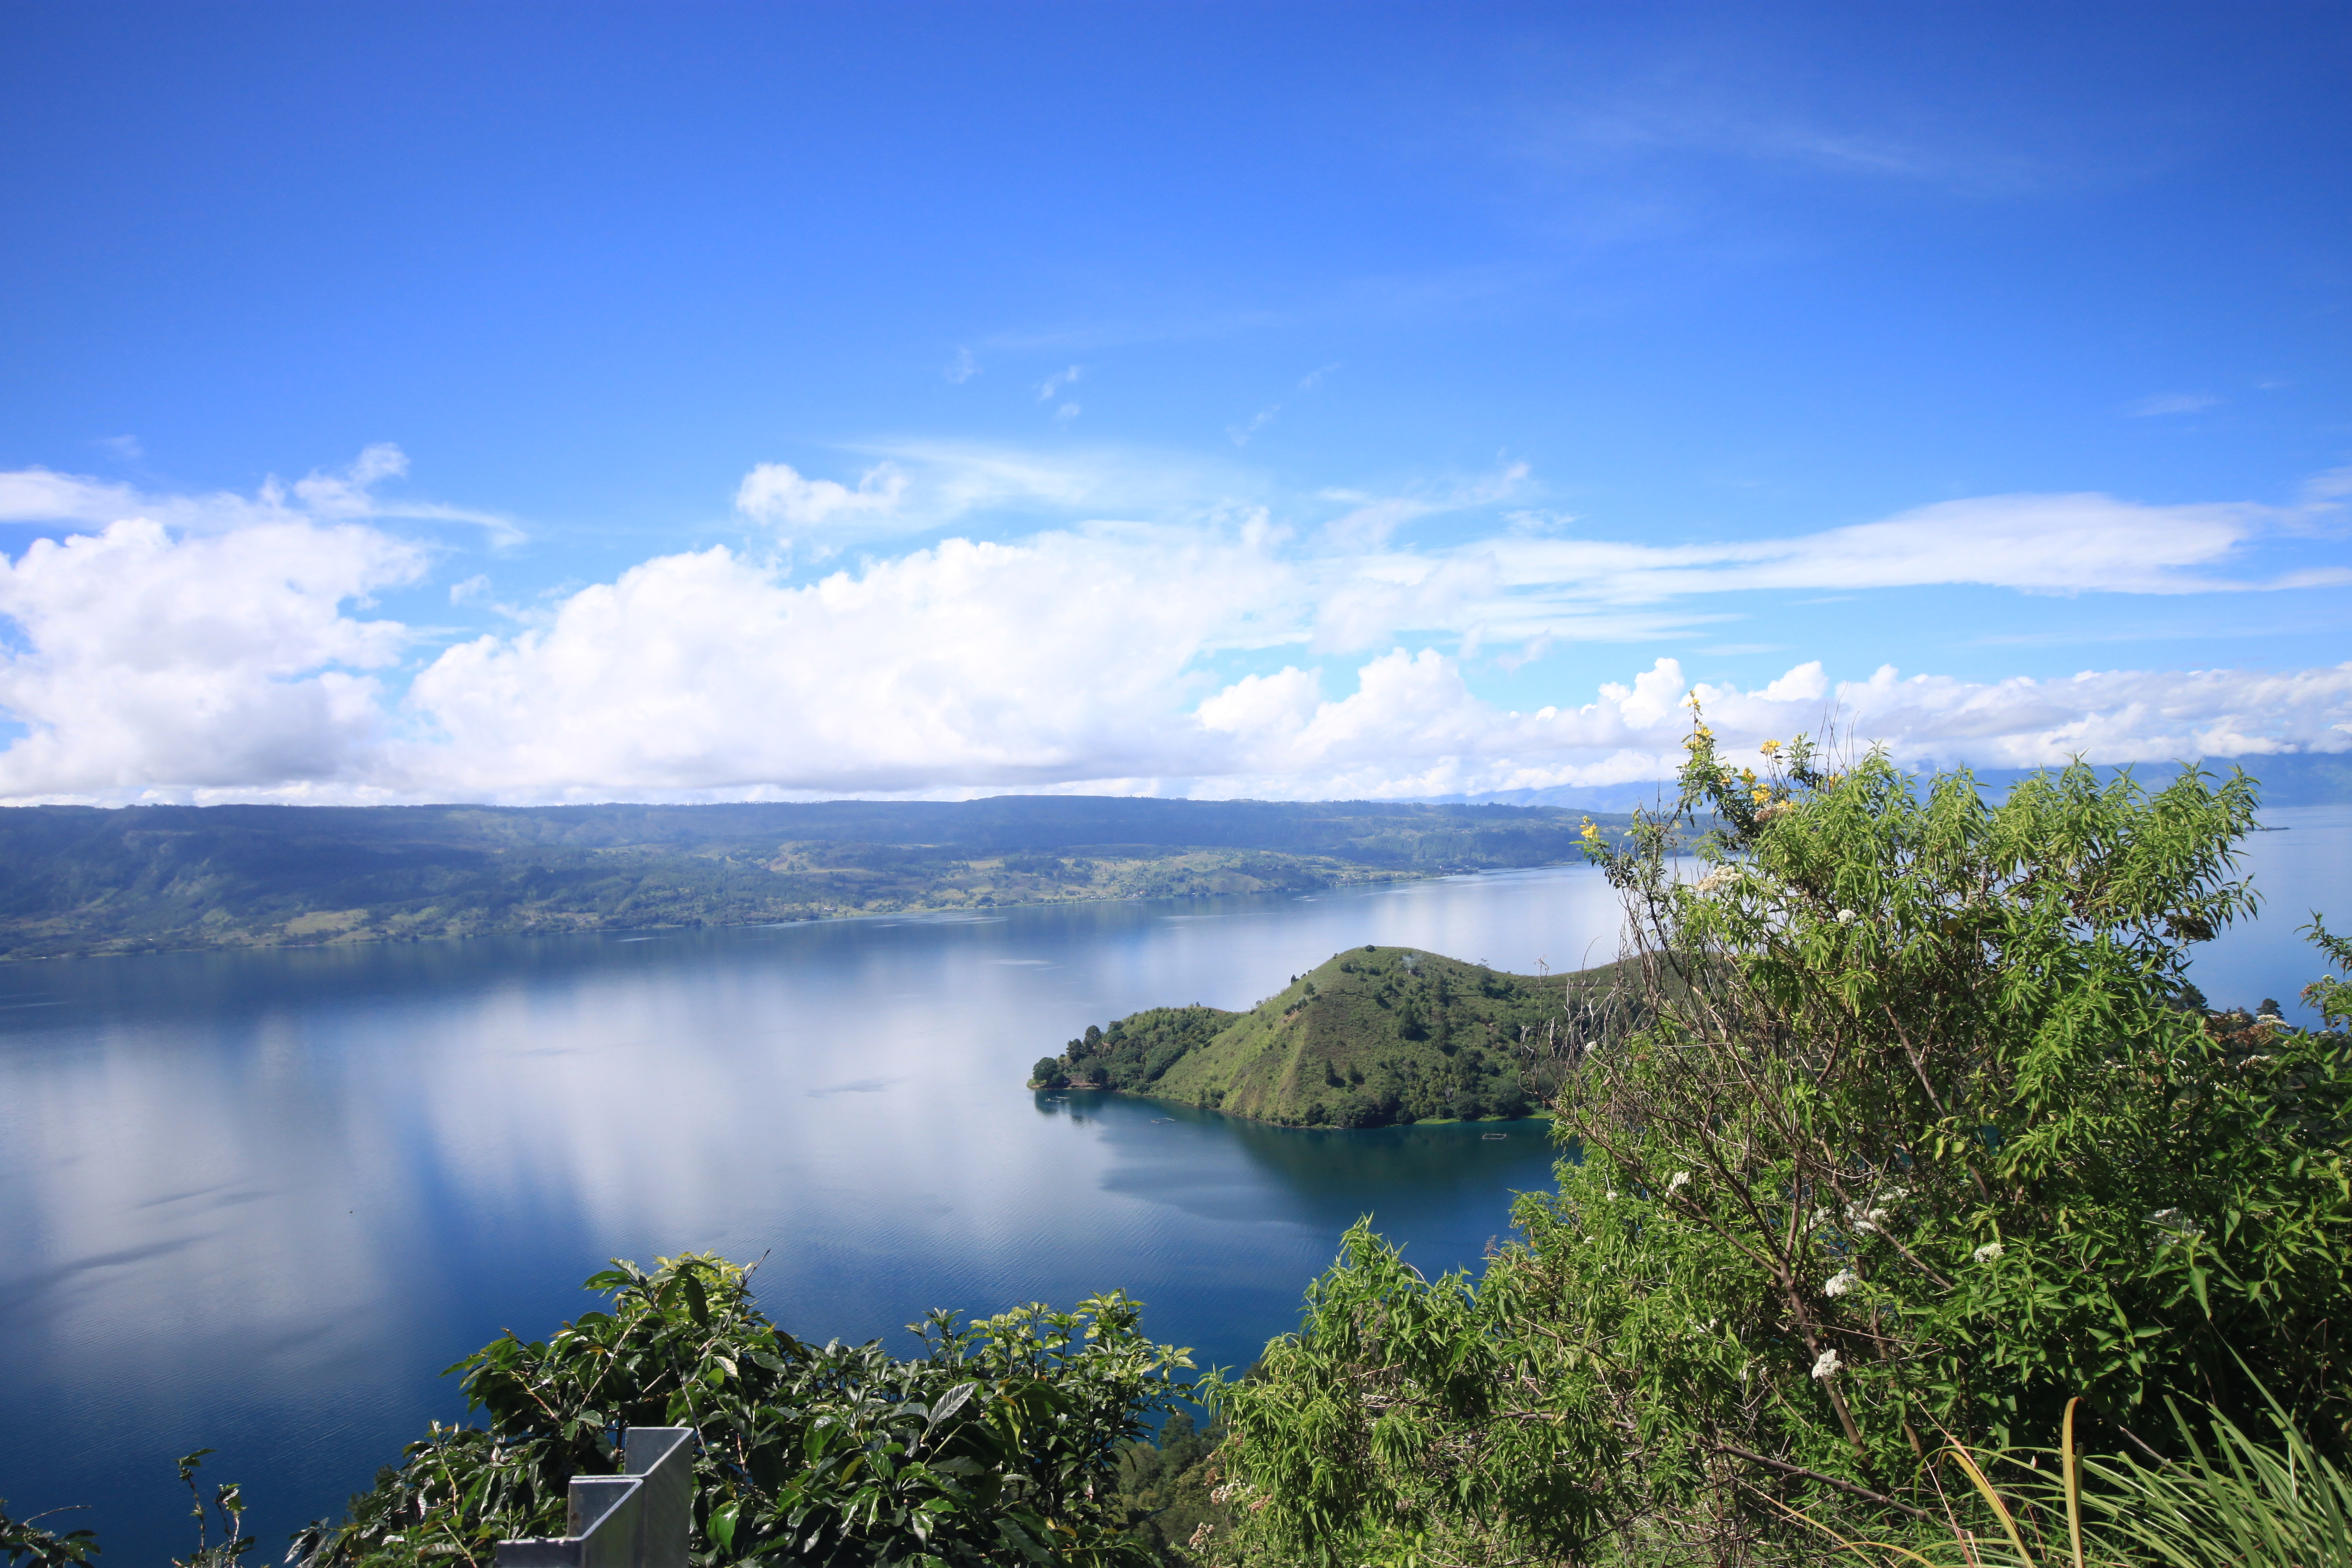 Download this Origin Trip Sumatra Lake Toba And Tawar Regions picture